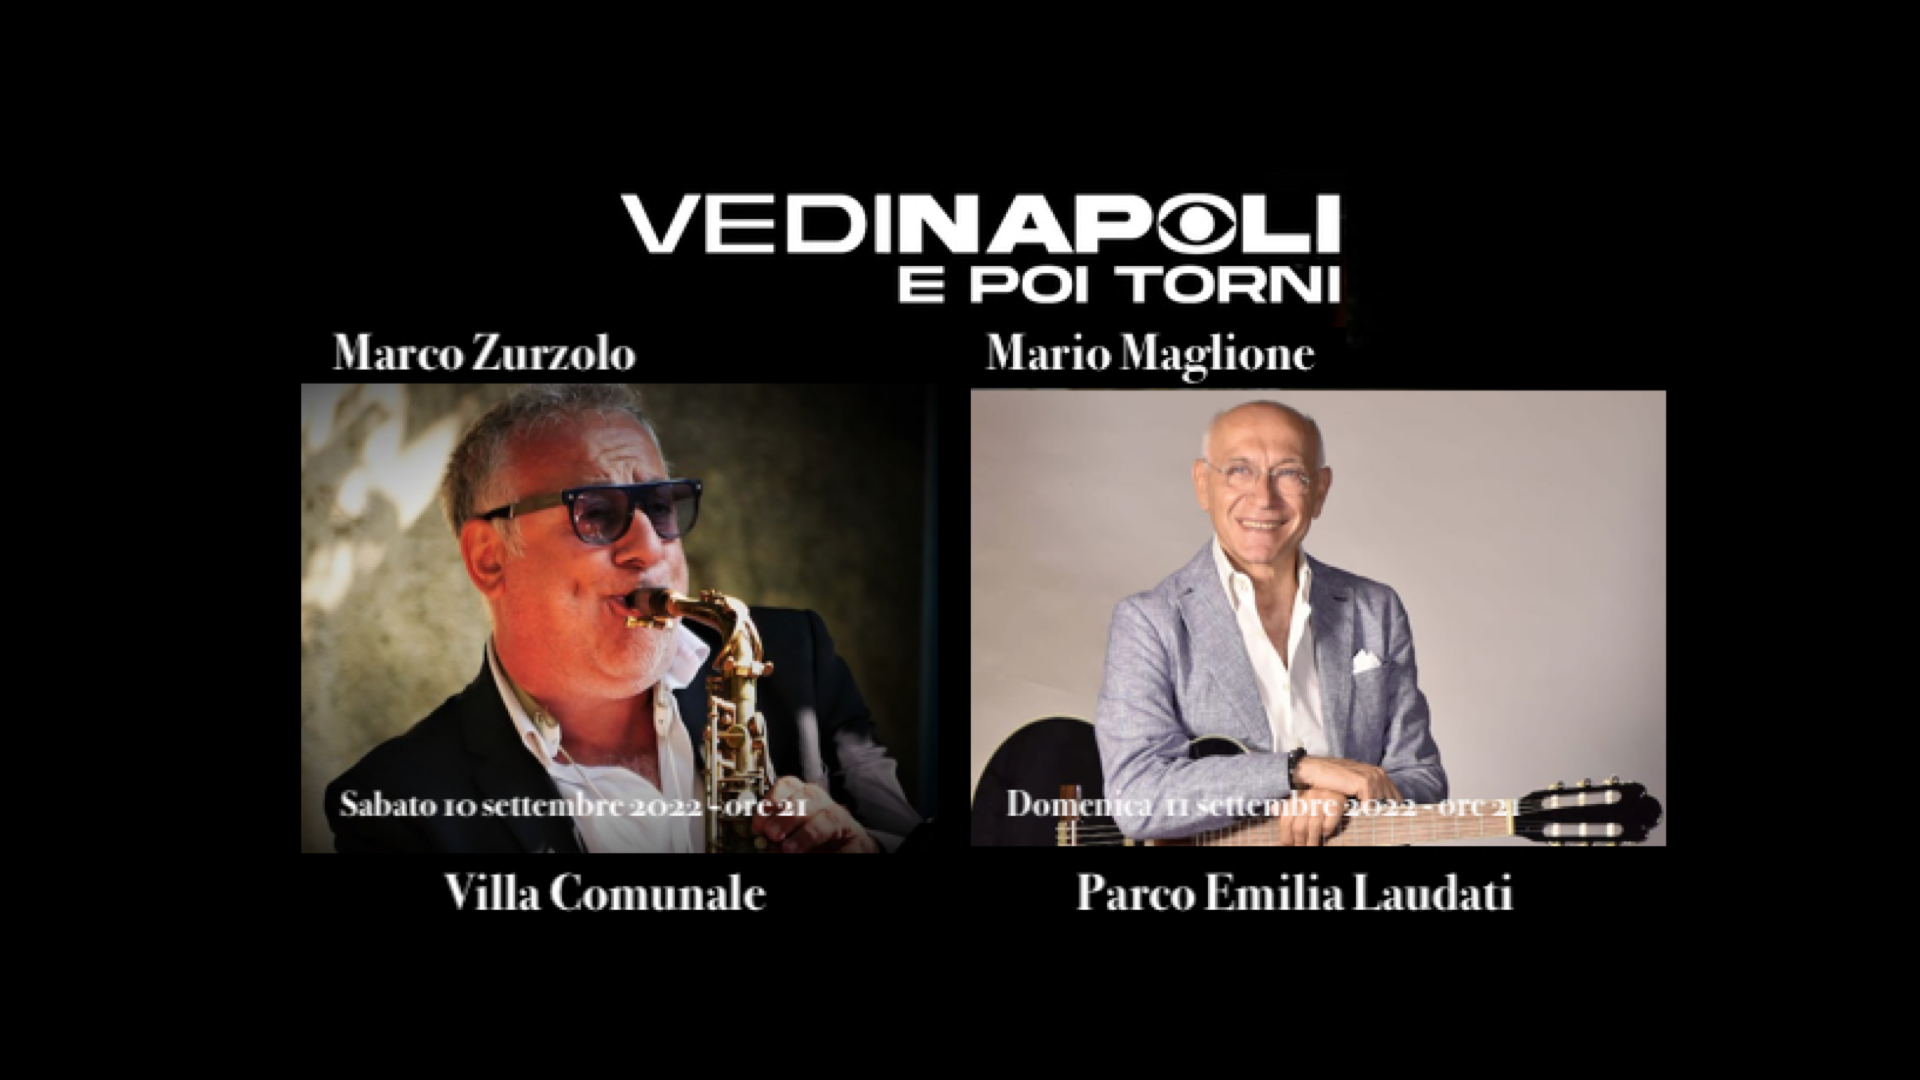 Marco Zurzolo e Mario Maglione e La musica che gira intorno 10 e 11 settembre a Napoli